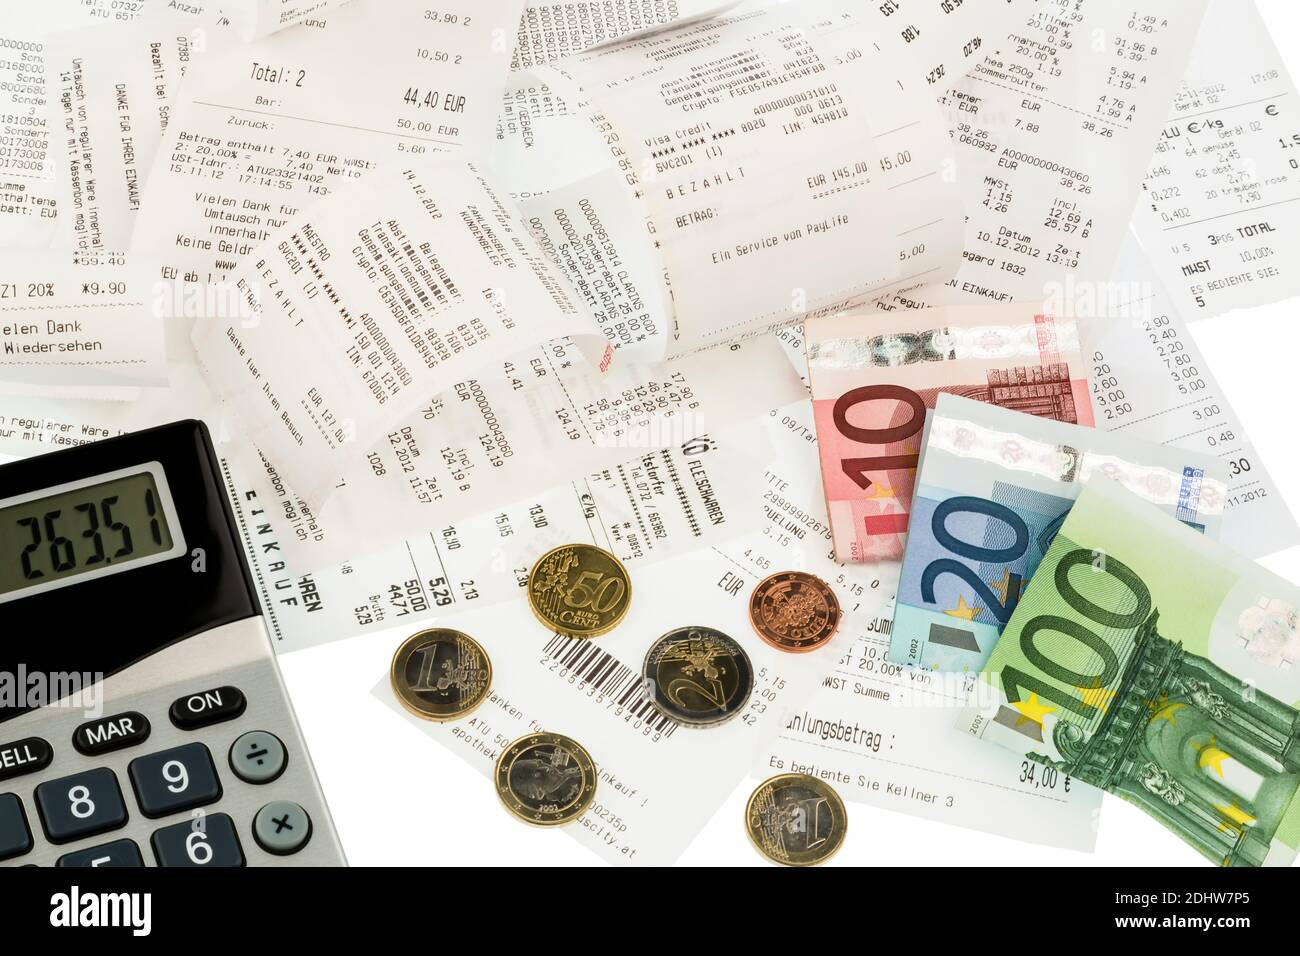 Euro-Banknoten und Münzen, Rechnungen, Einkaufsbelege, Ausgabenkontrolle, Taschenrechner, Foto Stock